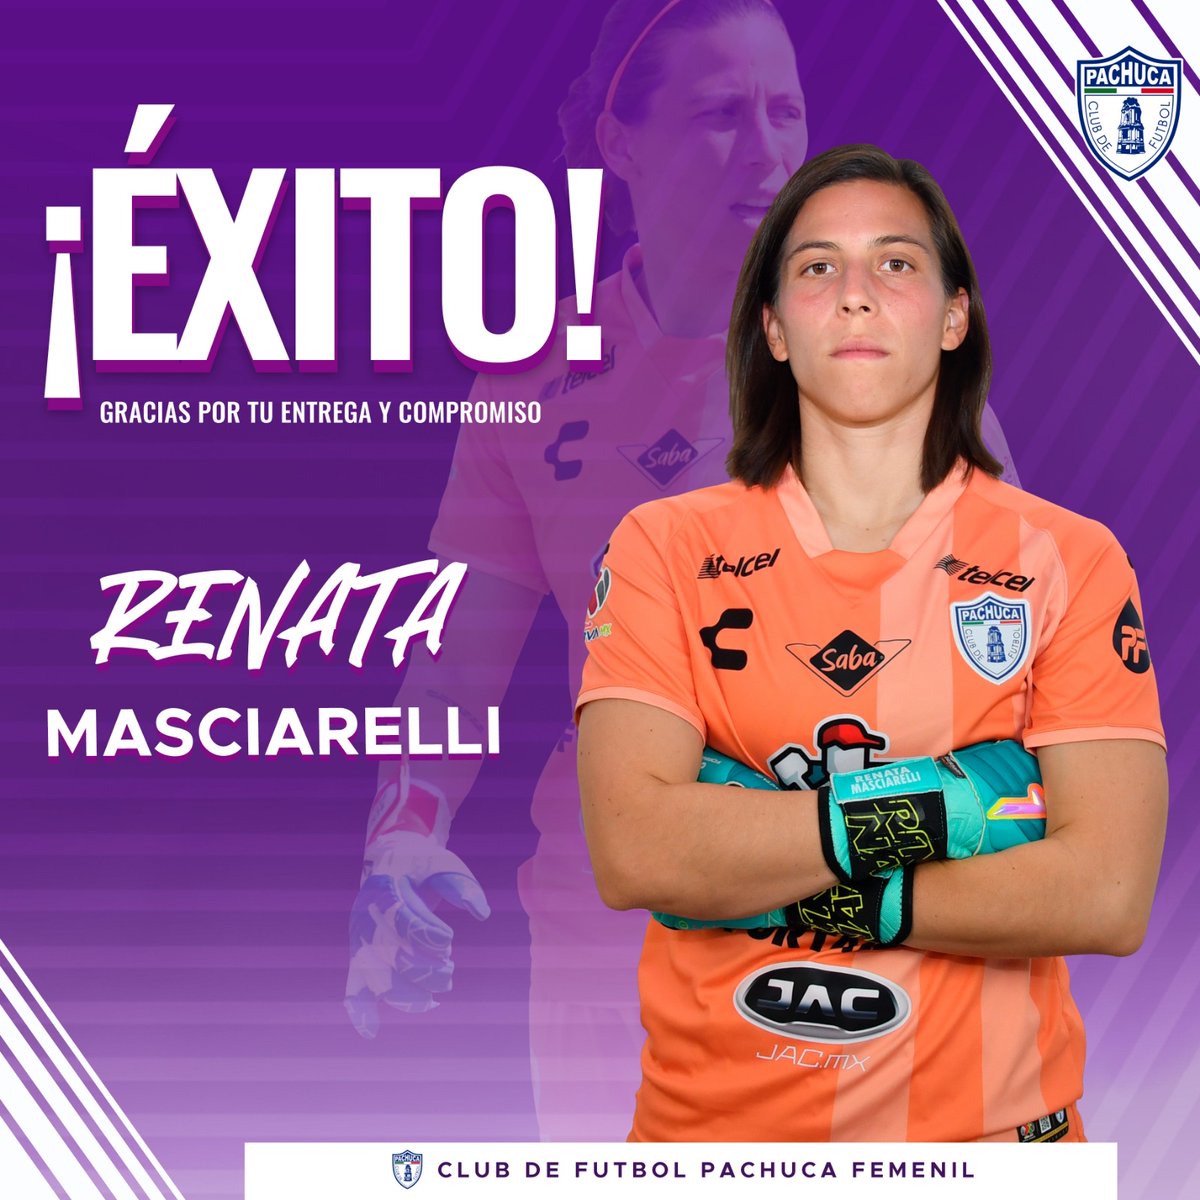 Renata Masciarelli es baja de Pachuca 💜💜
#LigaBBVAMXFemenil #VamosPorEllas #FútbolFemenino #VamosLasTuzas